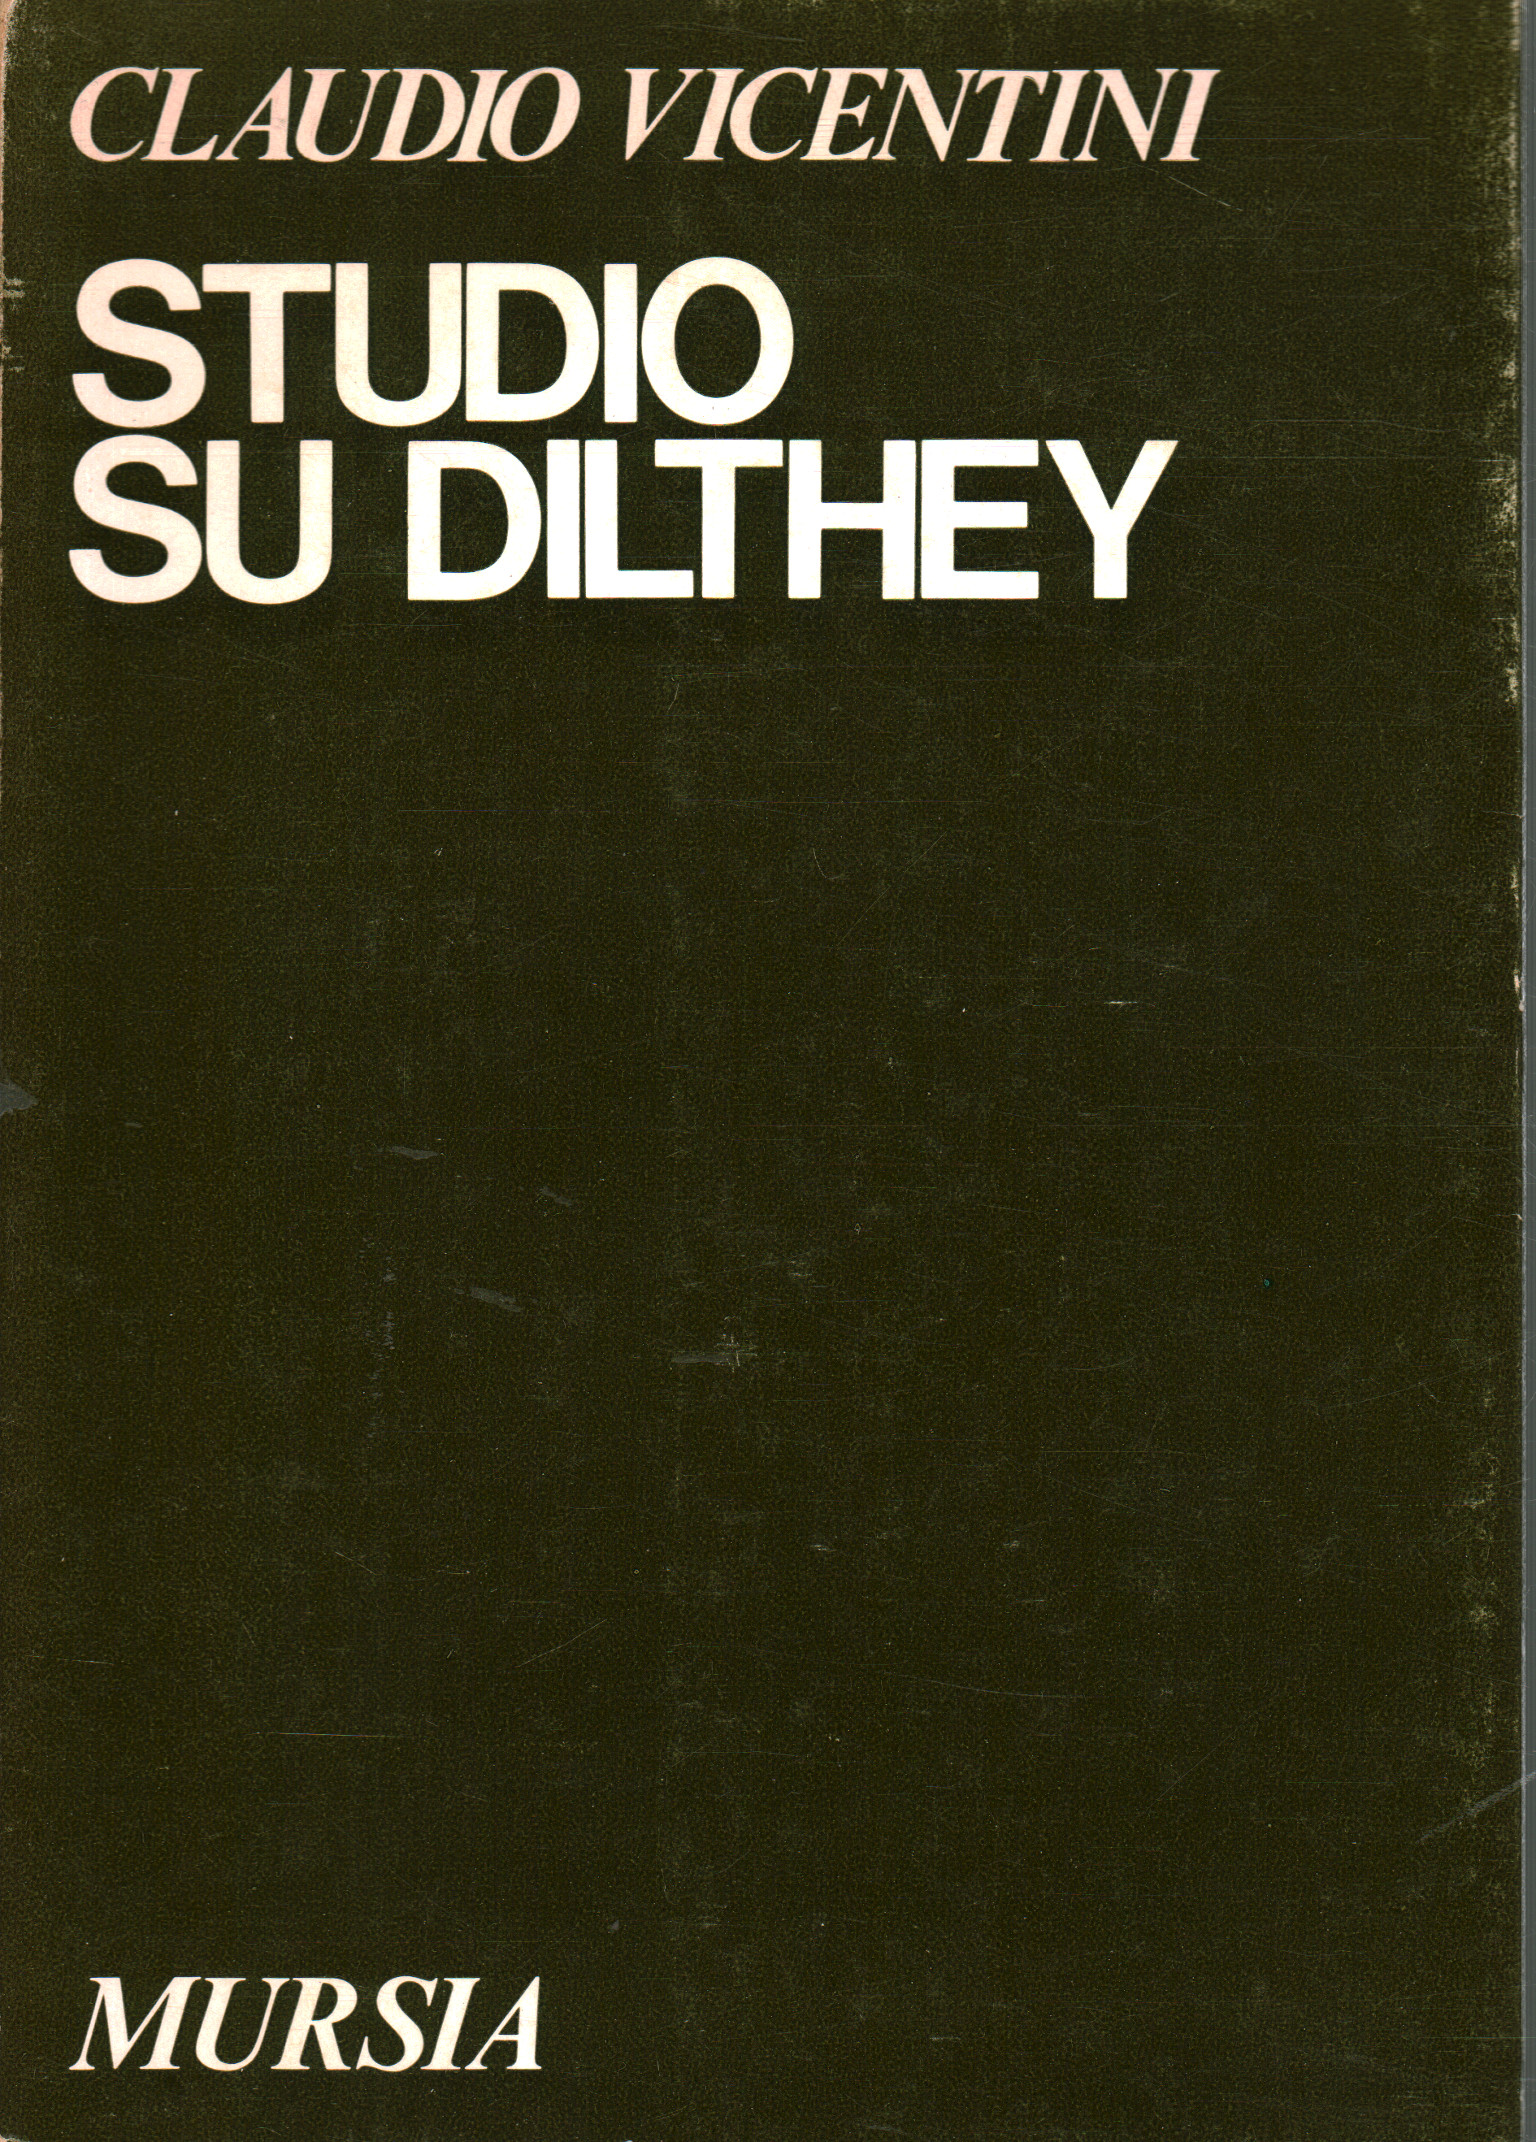 Estudio de Dilthey, Claudio Vicentini